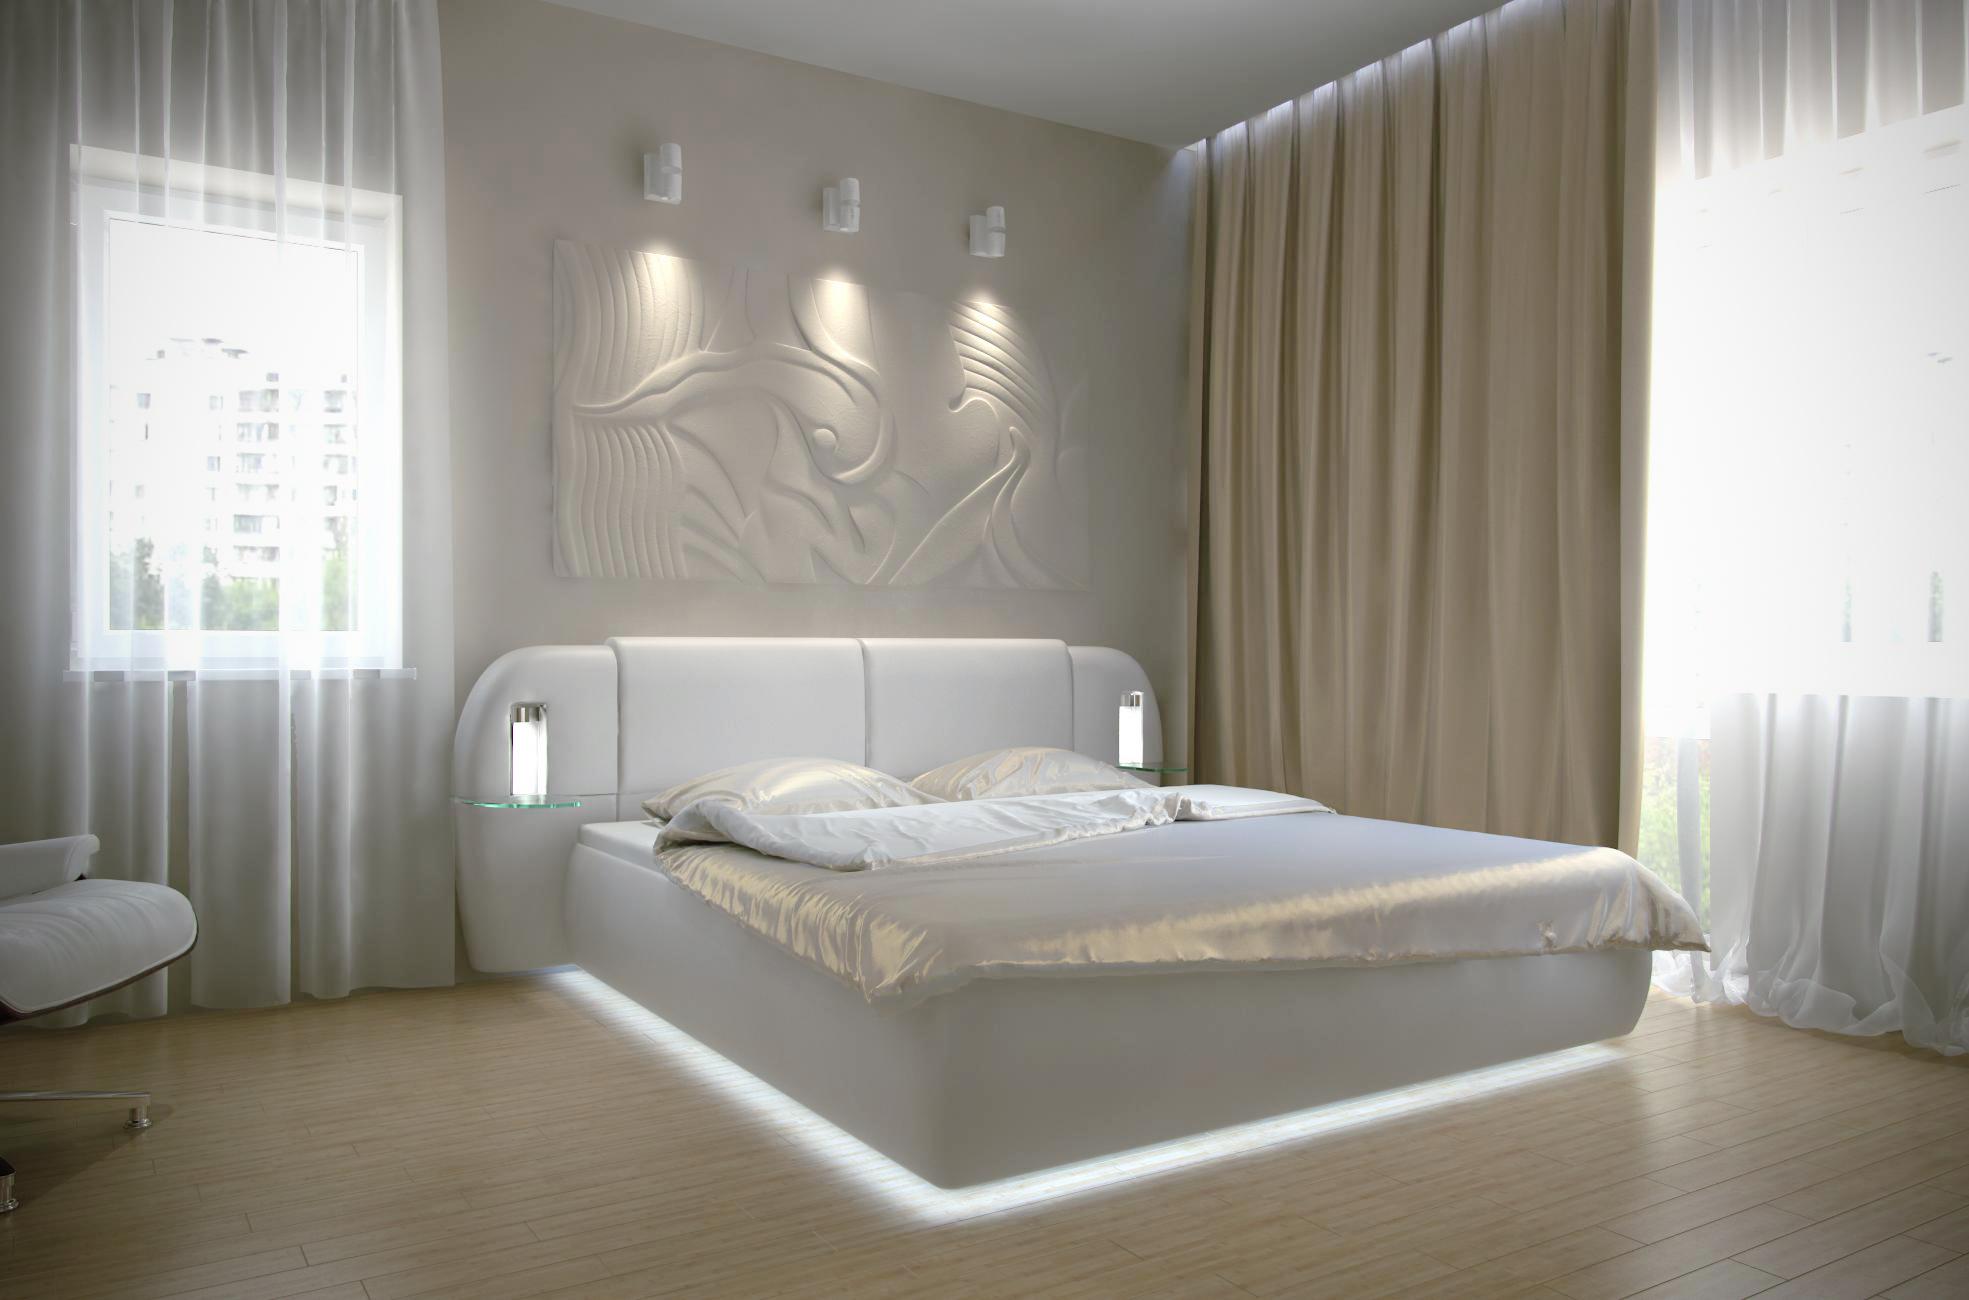 Интерьер спальни с нишей с подсветкой, световыми линиями, рейками с подсветкой, бра над кроватью, подсветкой настенной, подсветкой светодиодной, светильниками над кроватью и с подсветкой